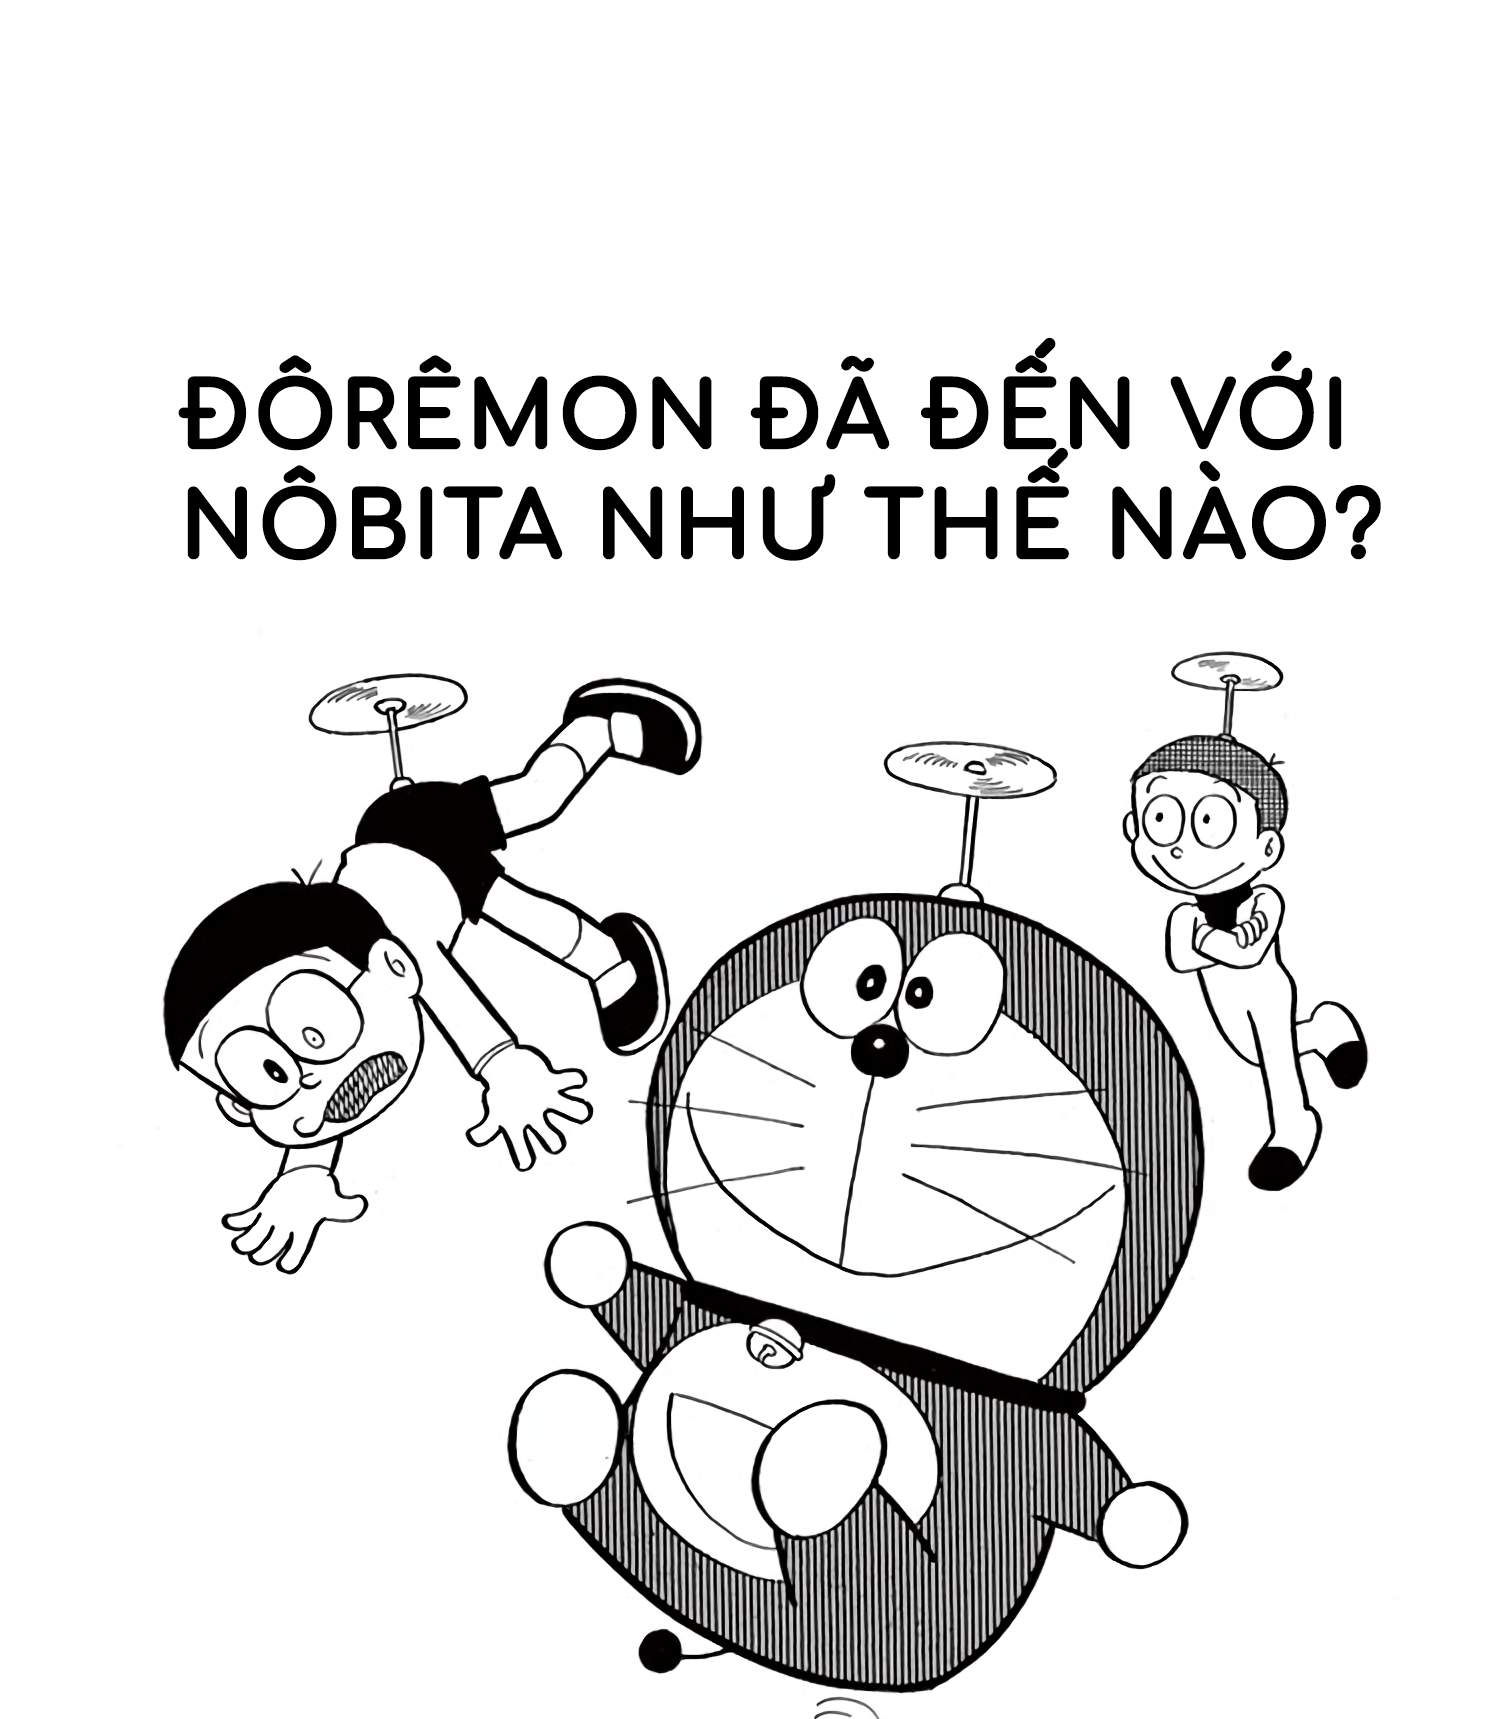 Doraemon: Hãy cùng xem hình của Doraemon, chú mèo máy có siêu năng lực và người bạn thân thiết của cậu bé Nobita. Với những cuộc phiêu lưu kỳ diệu và những bài học ý nghĩa, Doraemon luôn khiến chúng ta bồi hồi tình cảm và mang lại niềm vui cho cả gia đình.